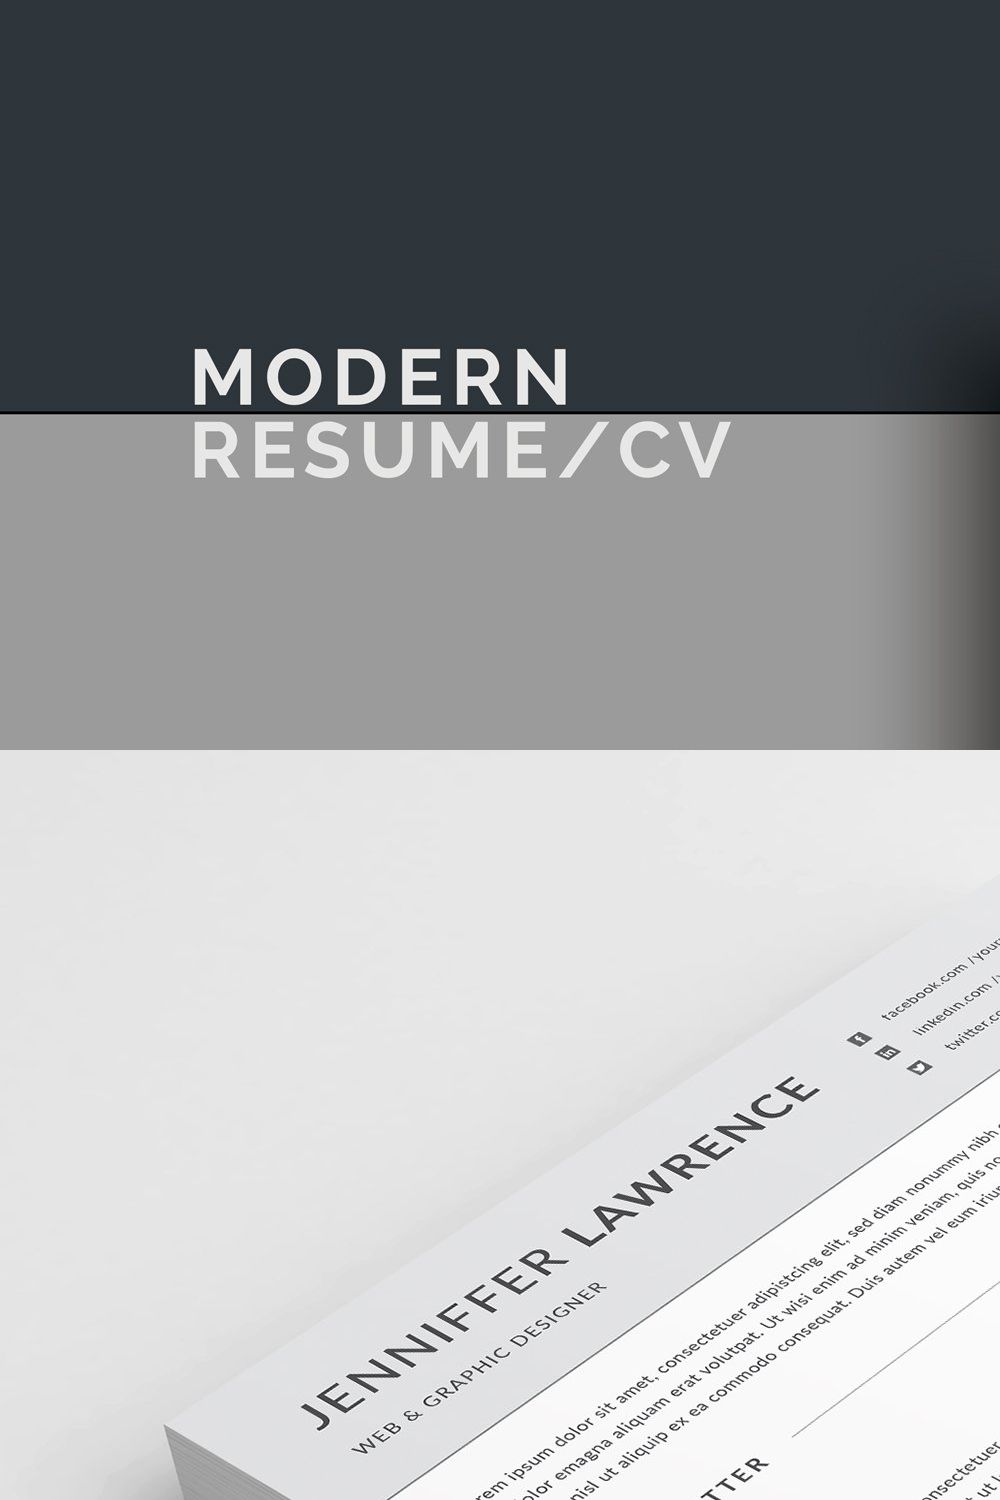 Modern Resume/CV pinterest preview image.